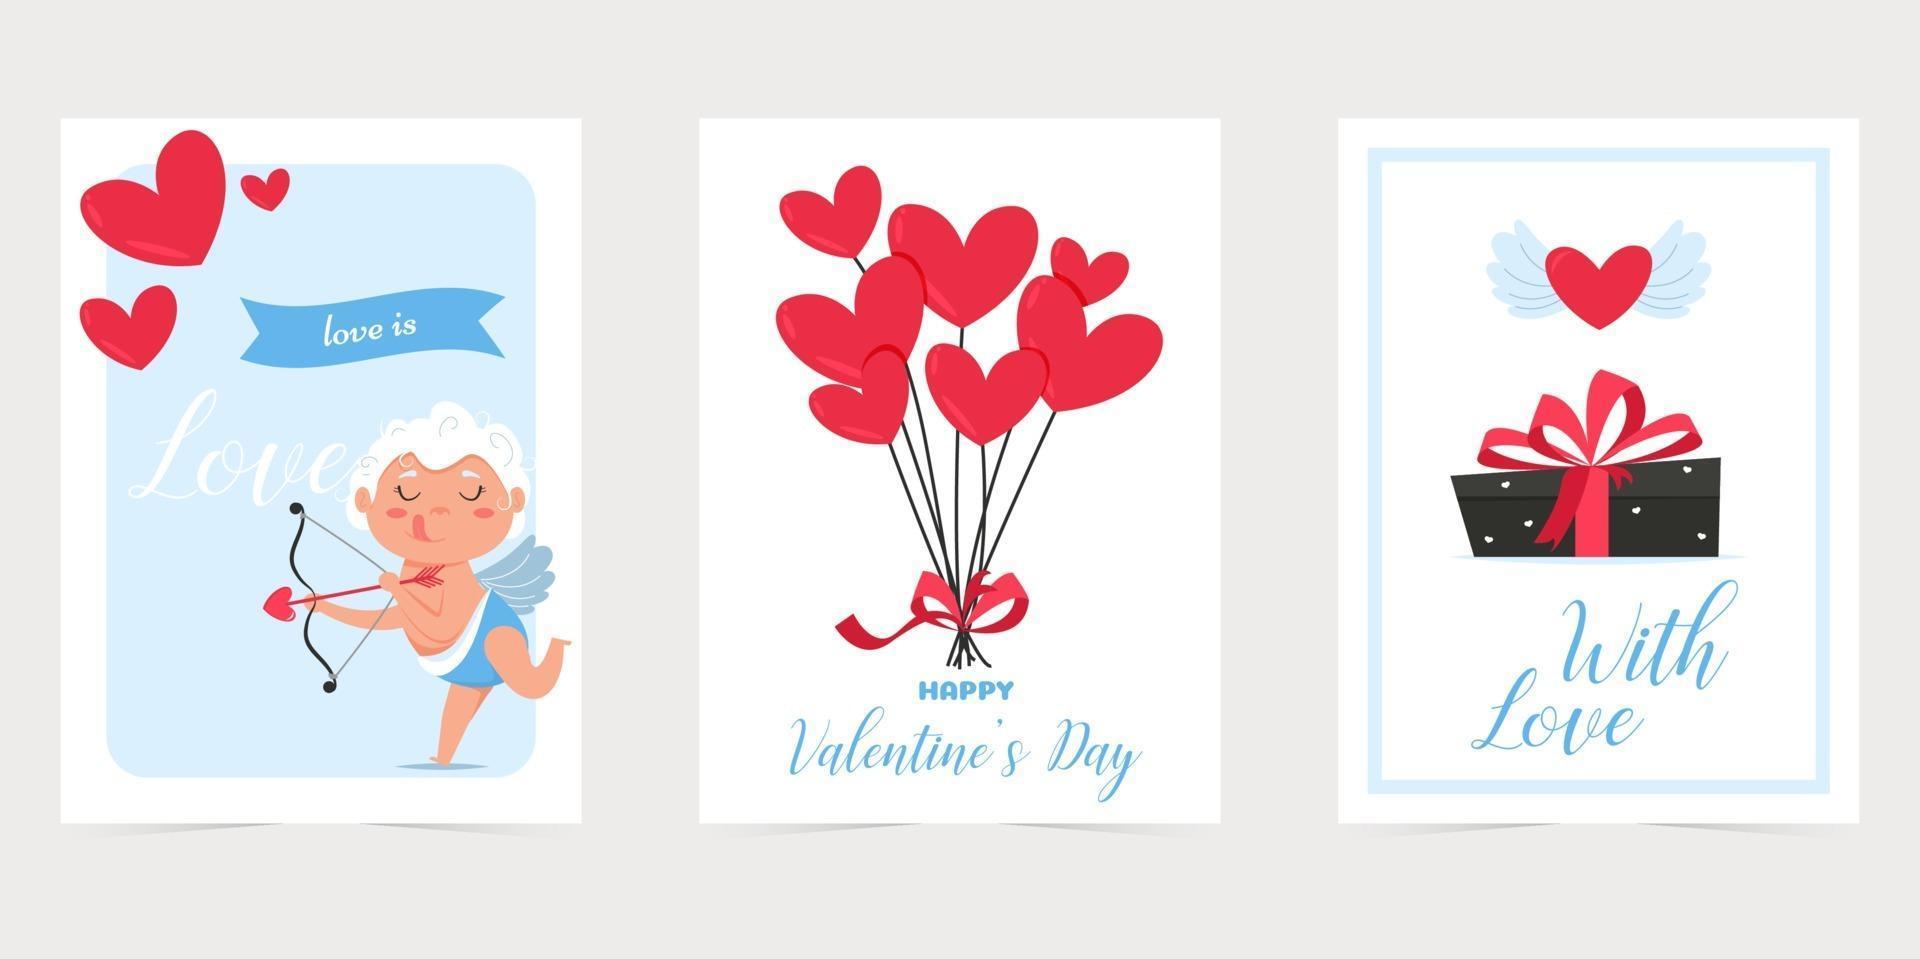 cartão de dia dos namorados com coração vermelho. amo você banner. feriado romântico cartaz do dia dos namorados ou cartão de felicitações. vetor